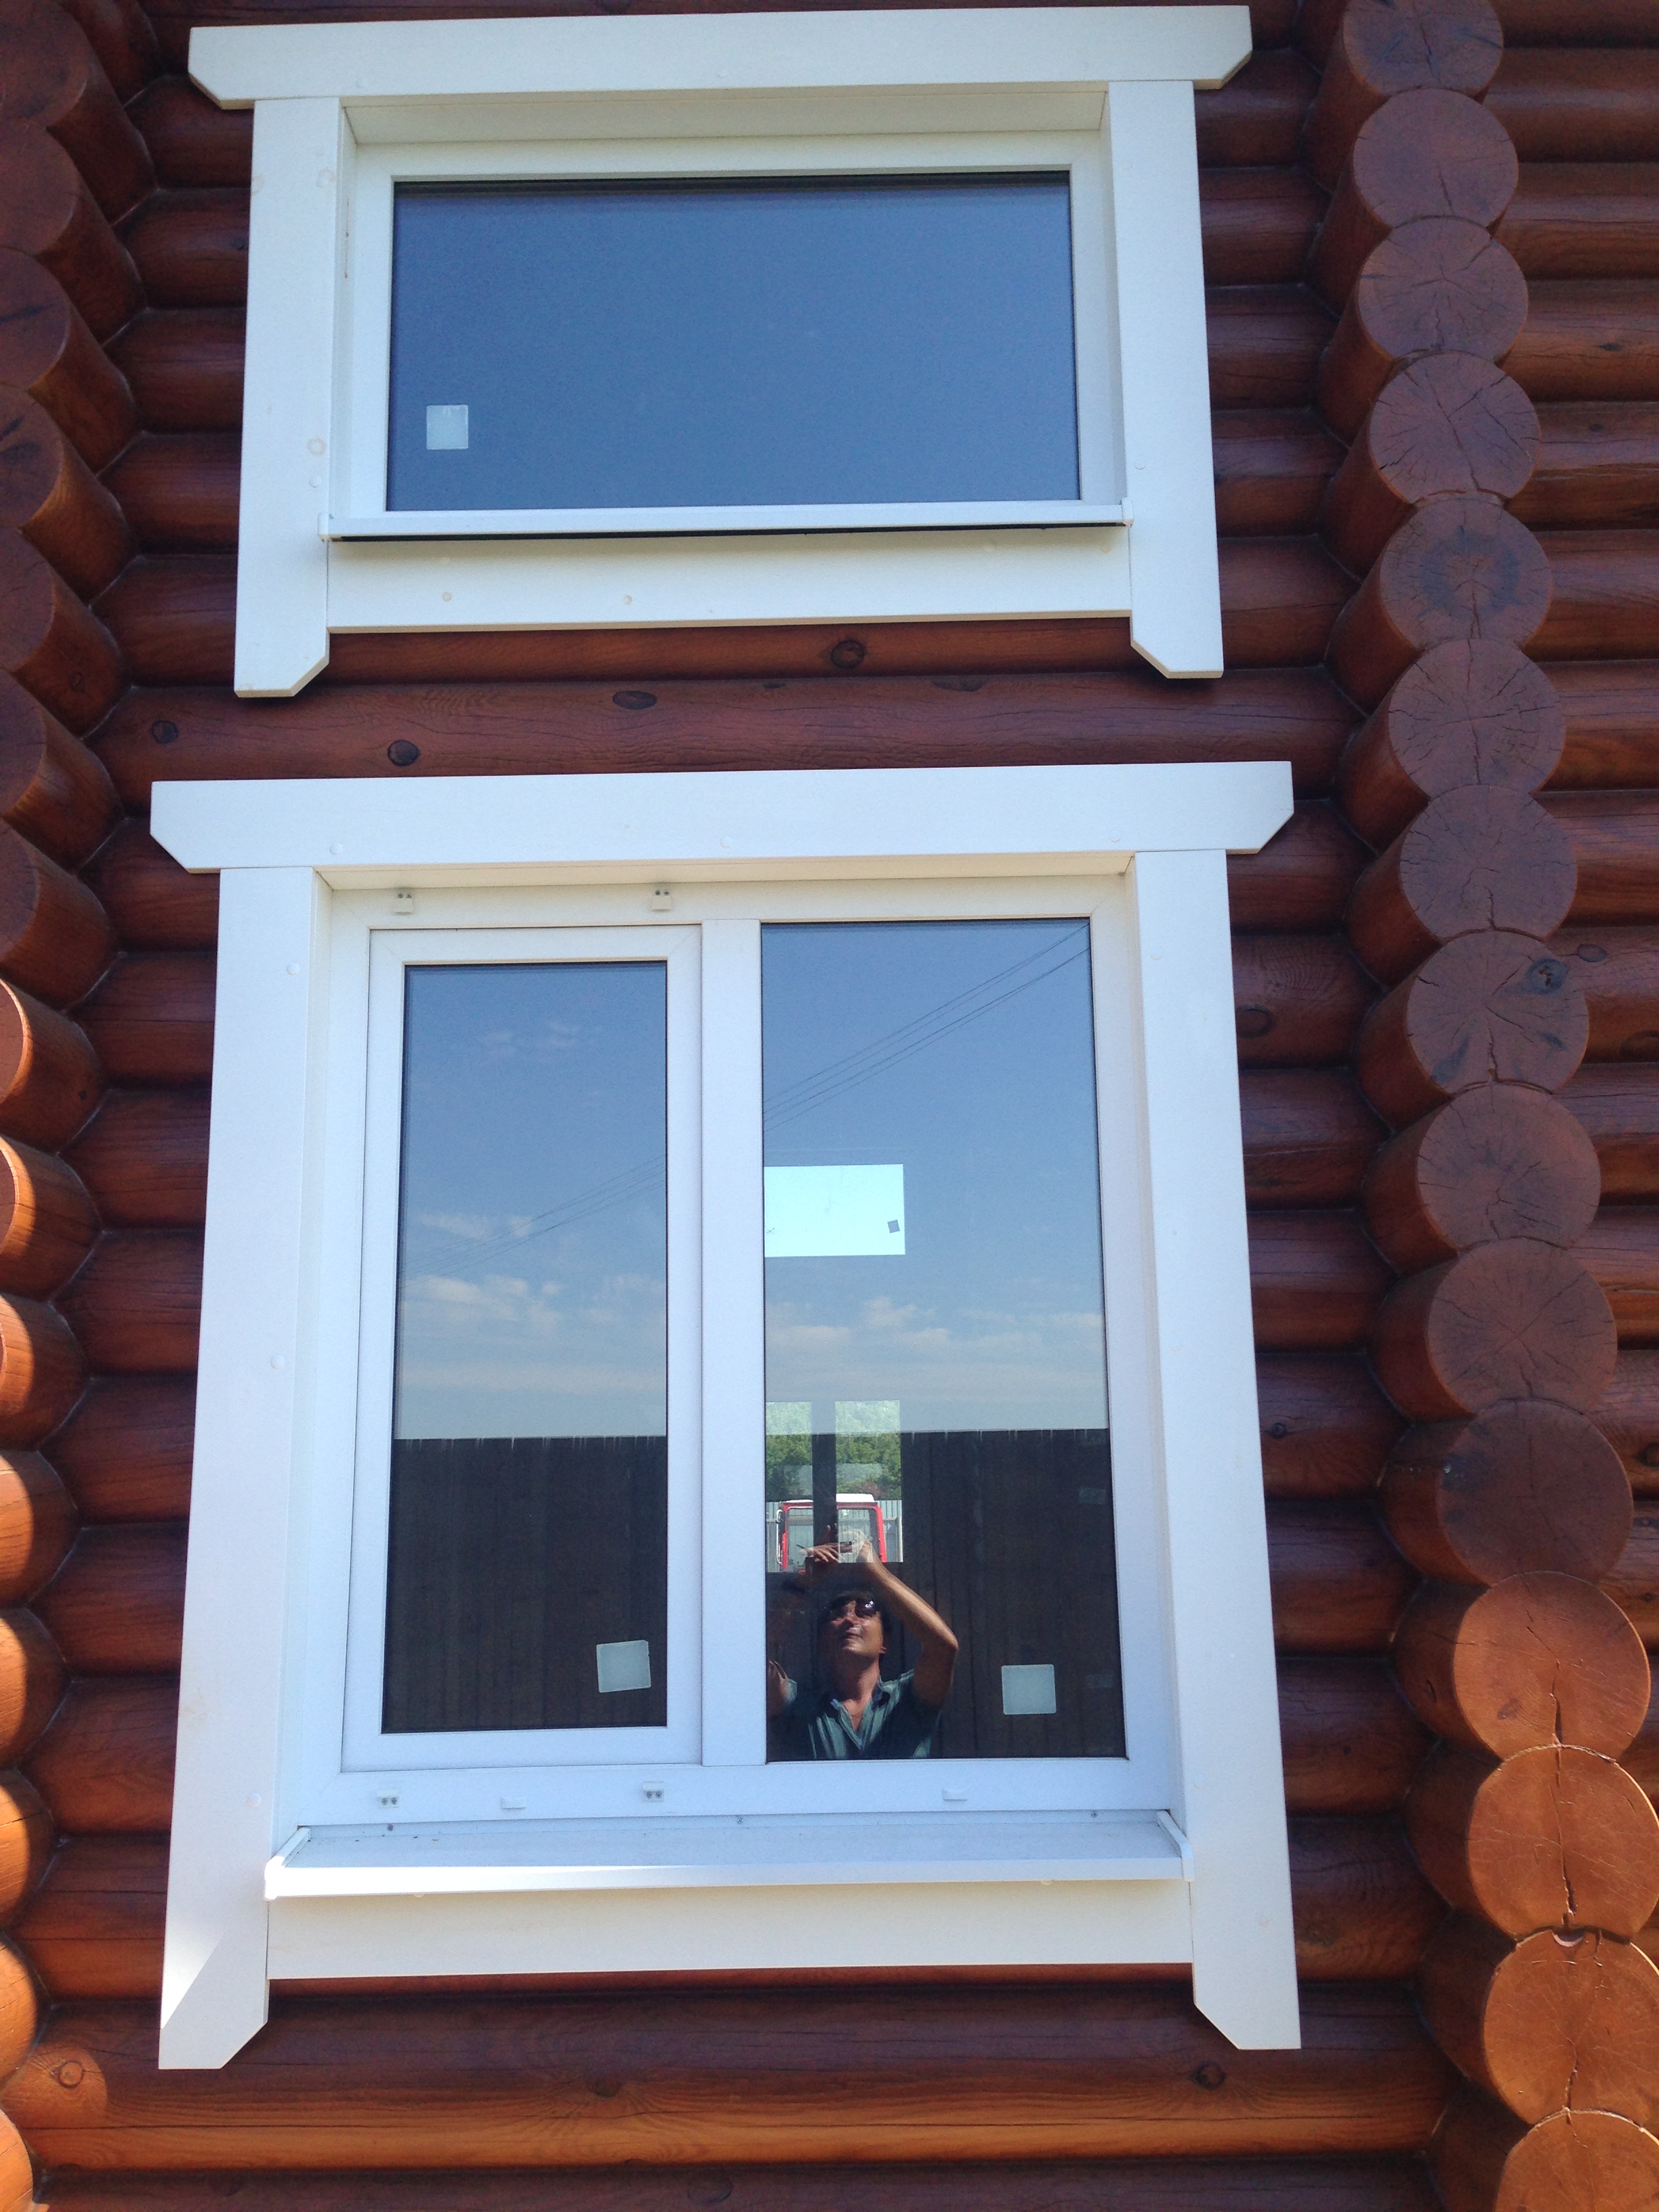 Фото наличник на окна: оконные изделия для пластиковых окон, декоративные металлические варианты своими руками, монтаж на ПВХ-конструкции